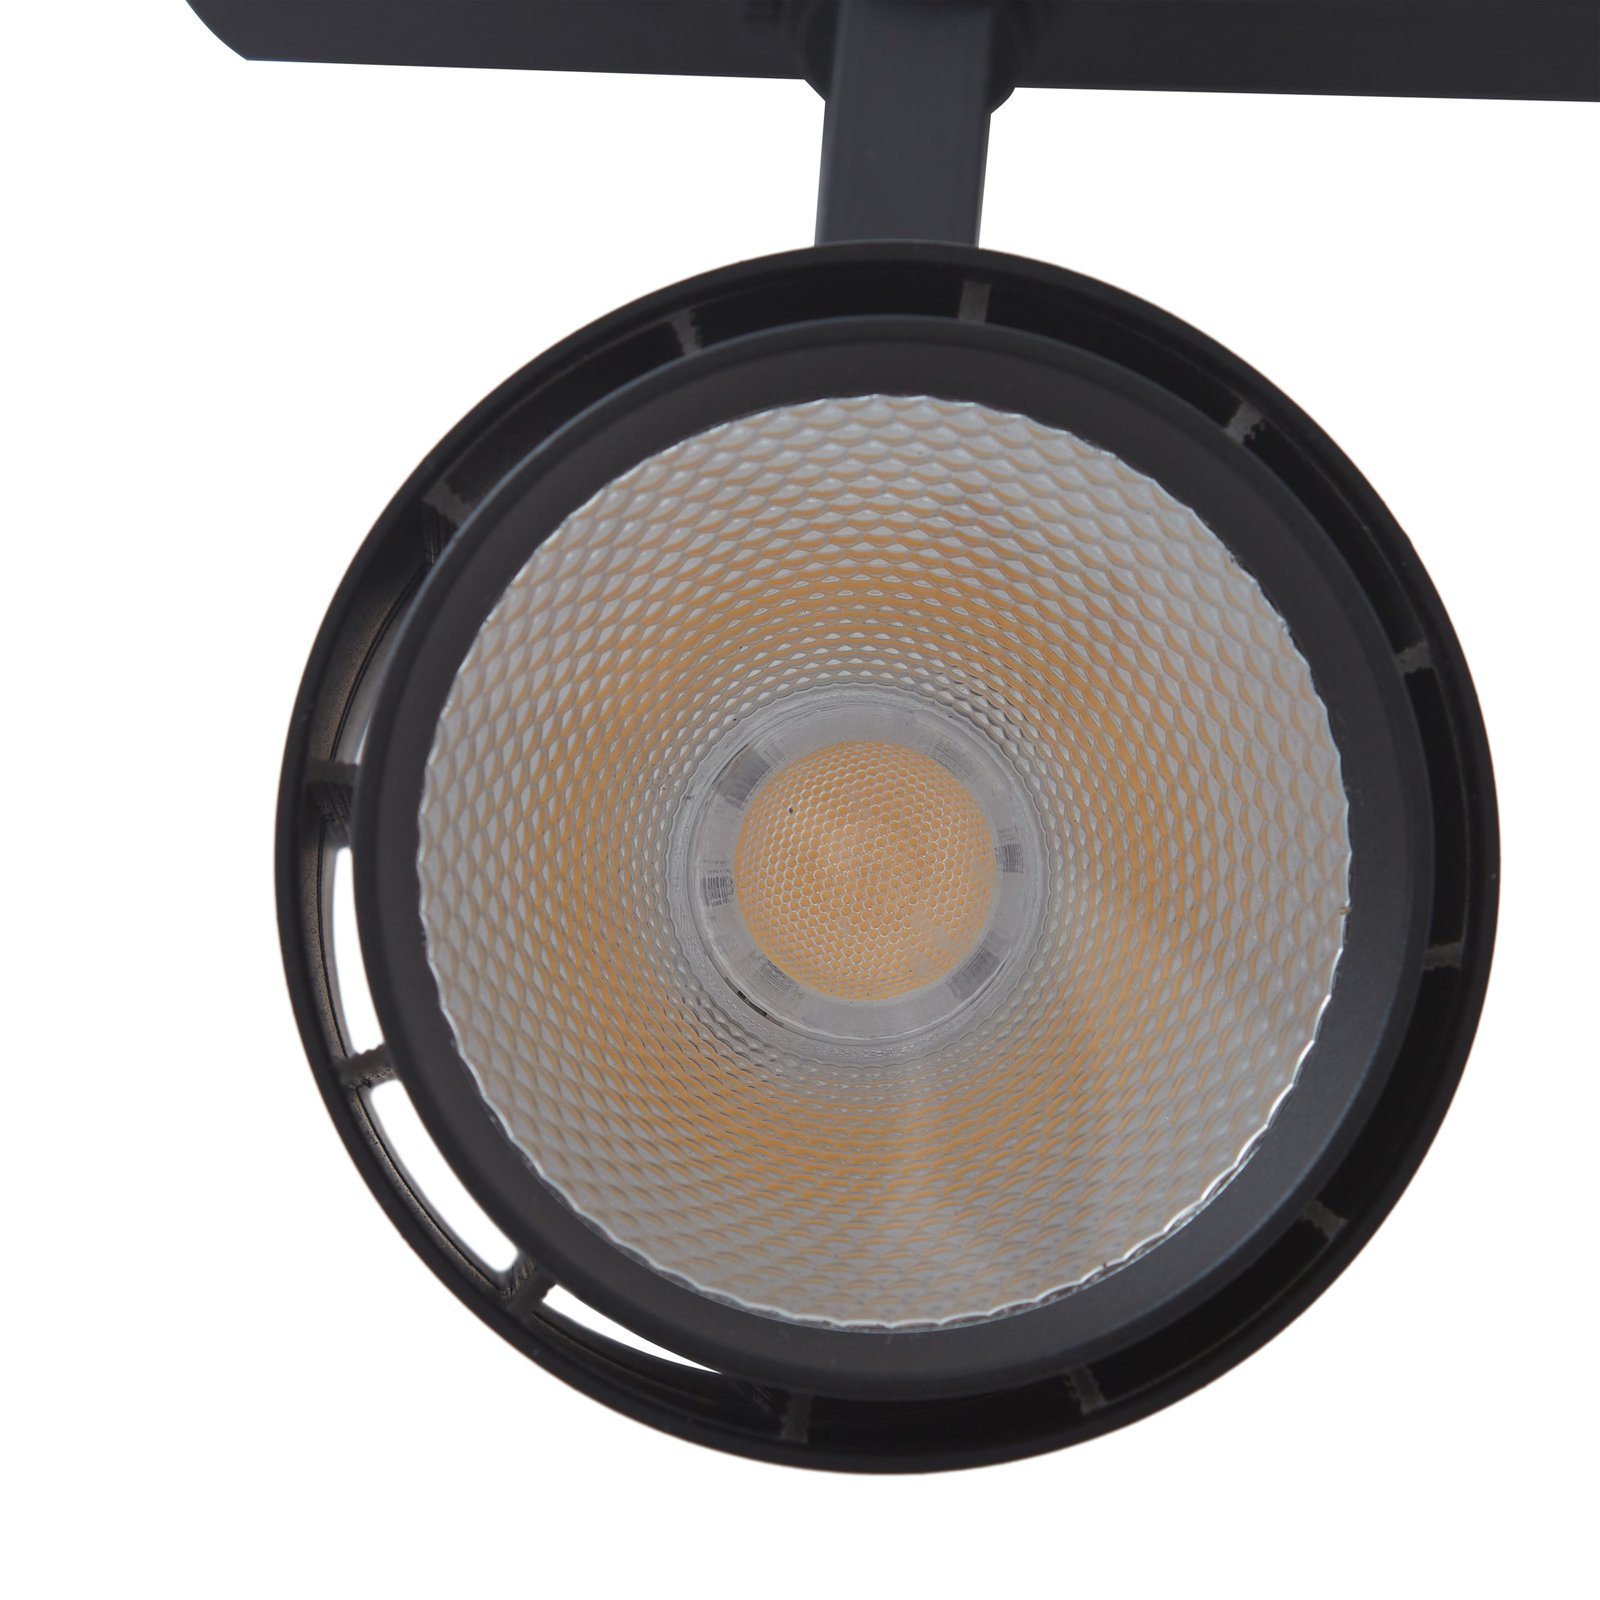 Projetor de calha LED Arcchio Marny, preto, trifásico, regulável.